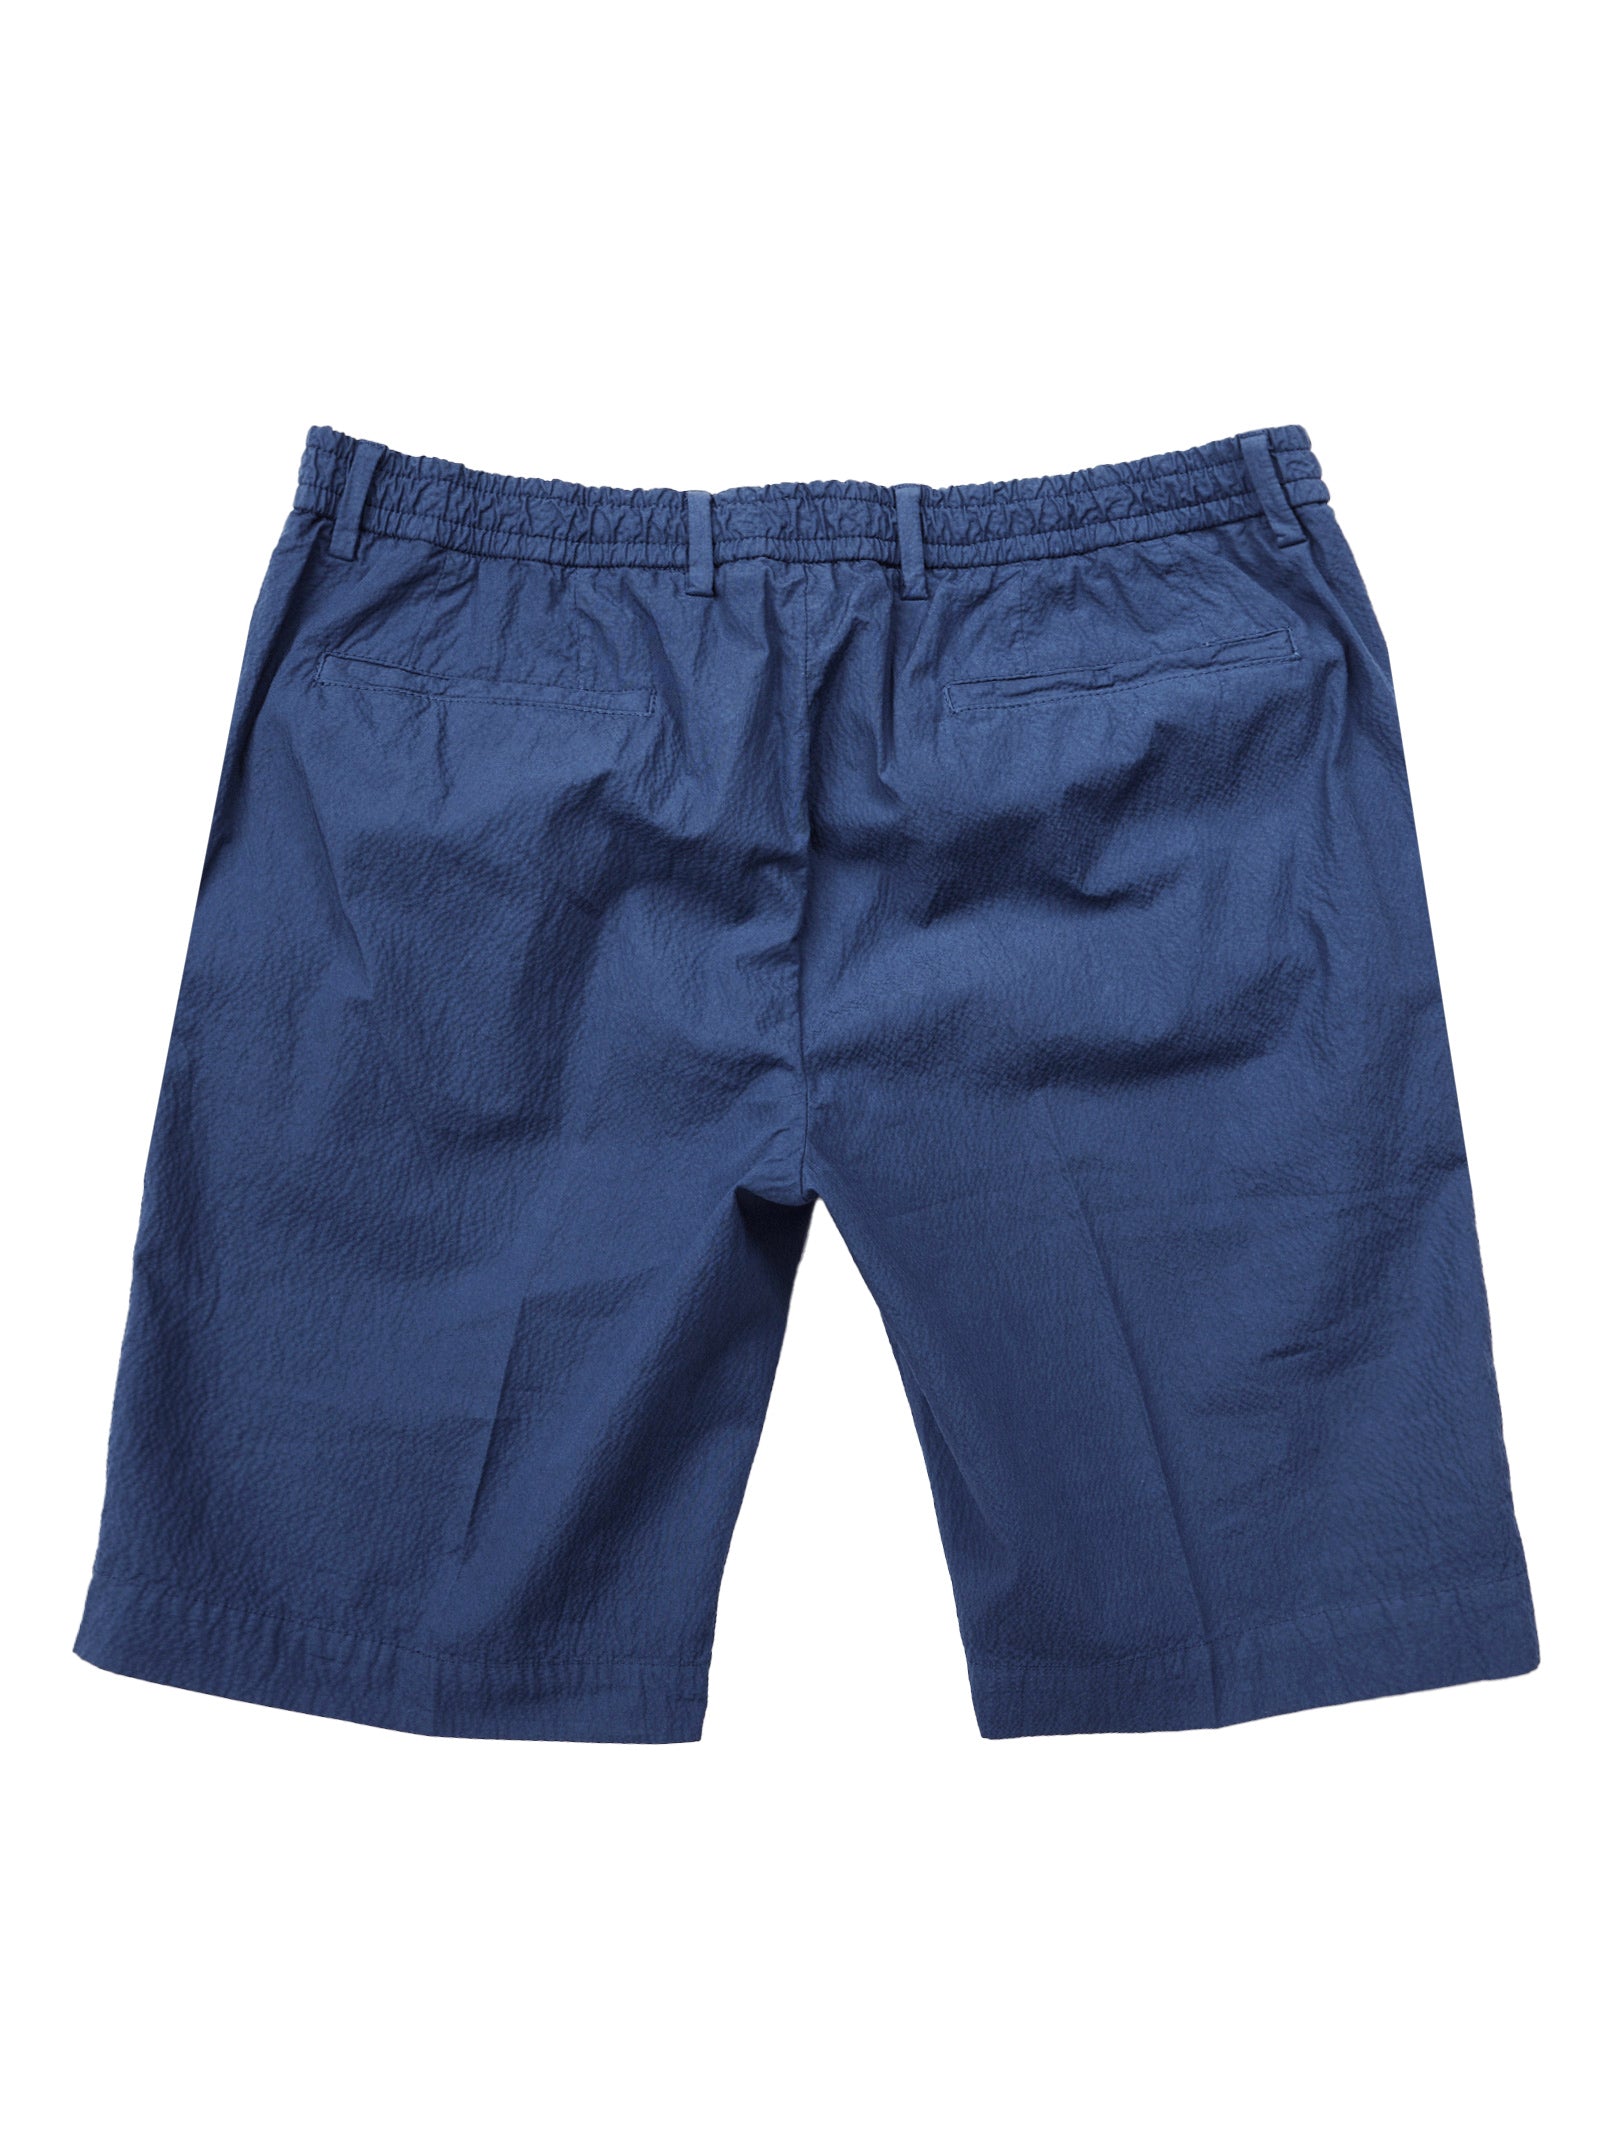 Navy Seersucker Stretch Shorts